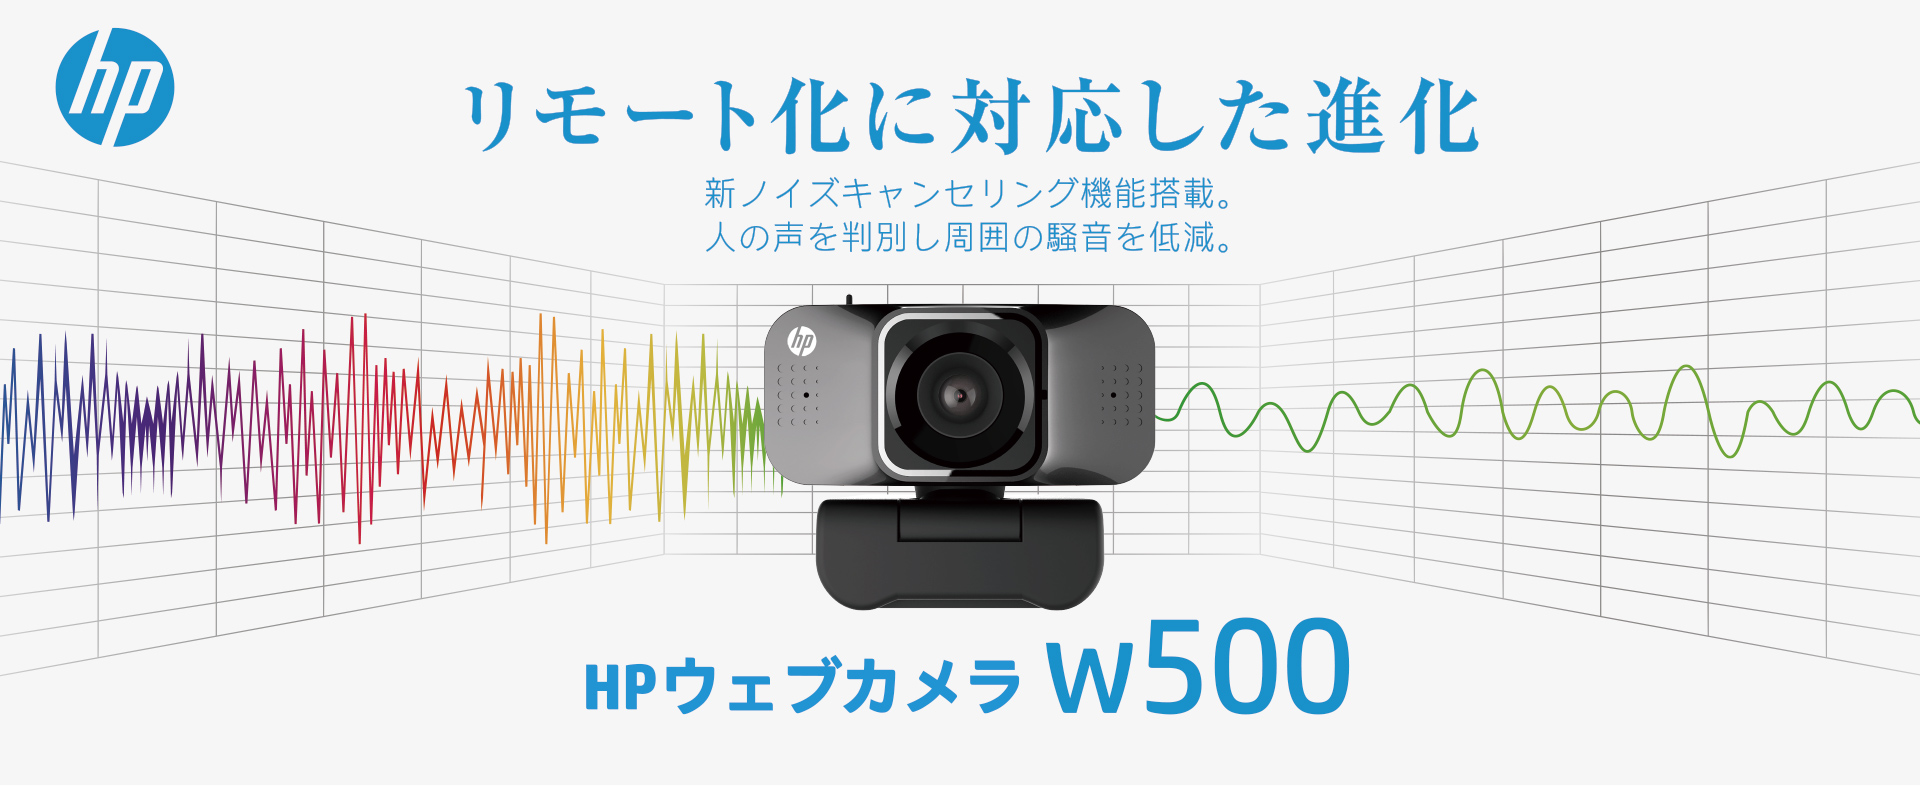 リモート化に対応した進化 HPウェブカメラw500